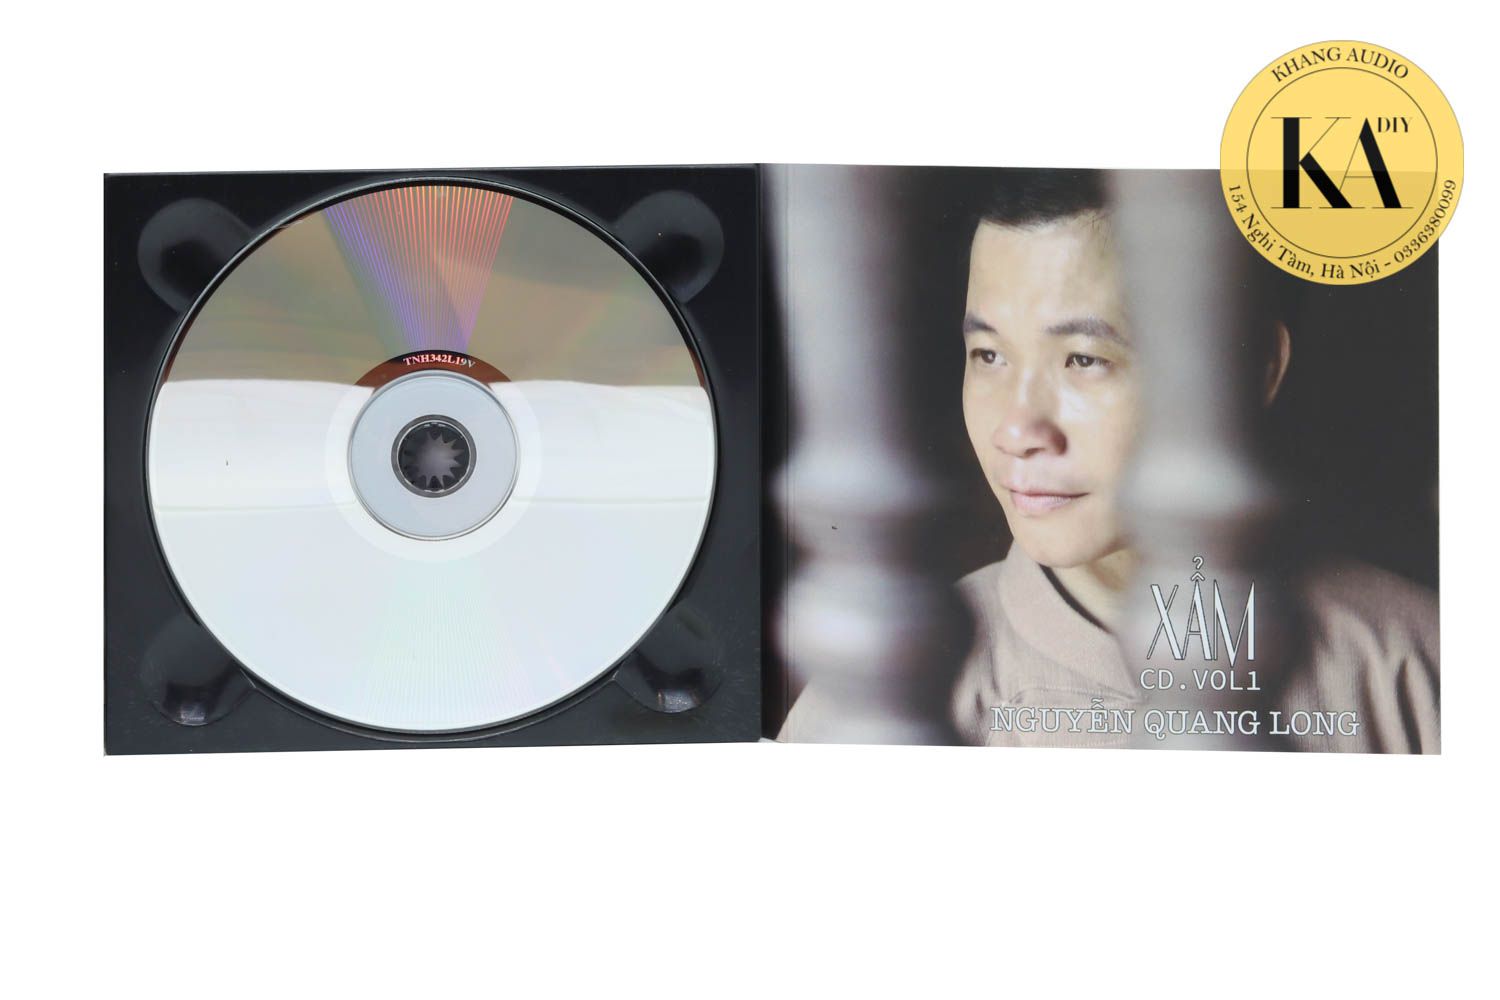 Xẩm - Trách ông Nguyệt Lão - Nguyễn Quang Long Khang Audio 0336380099